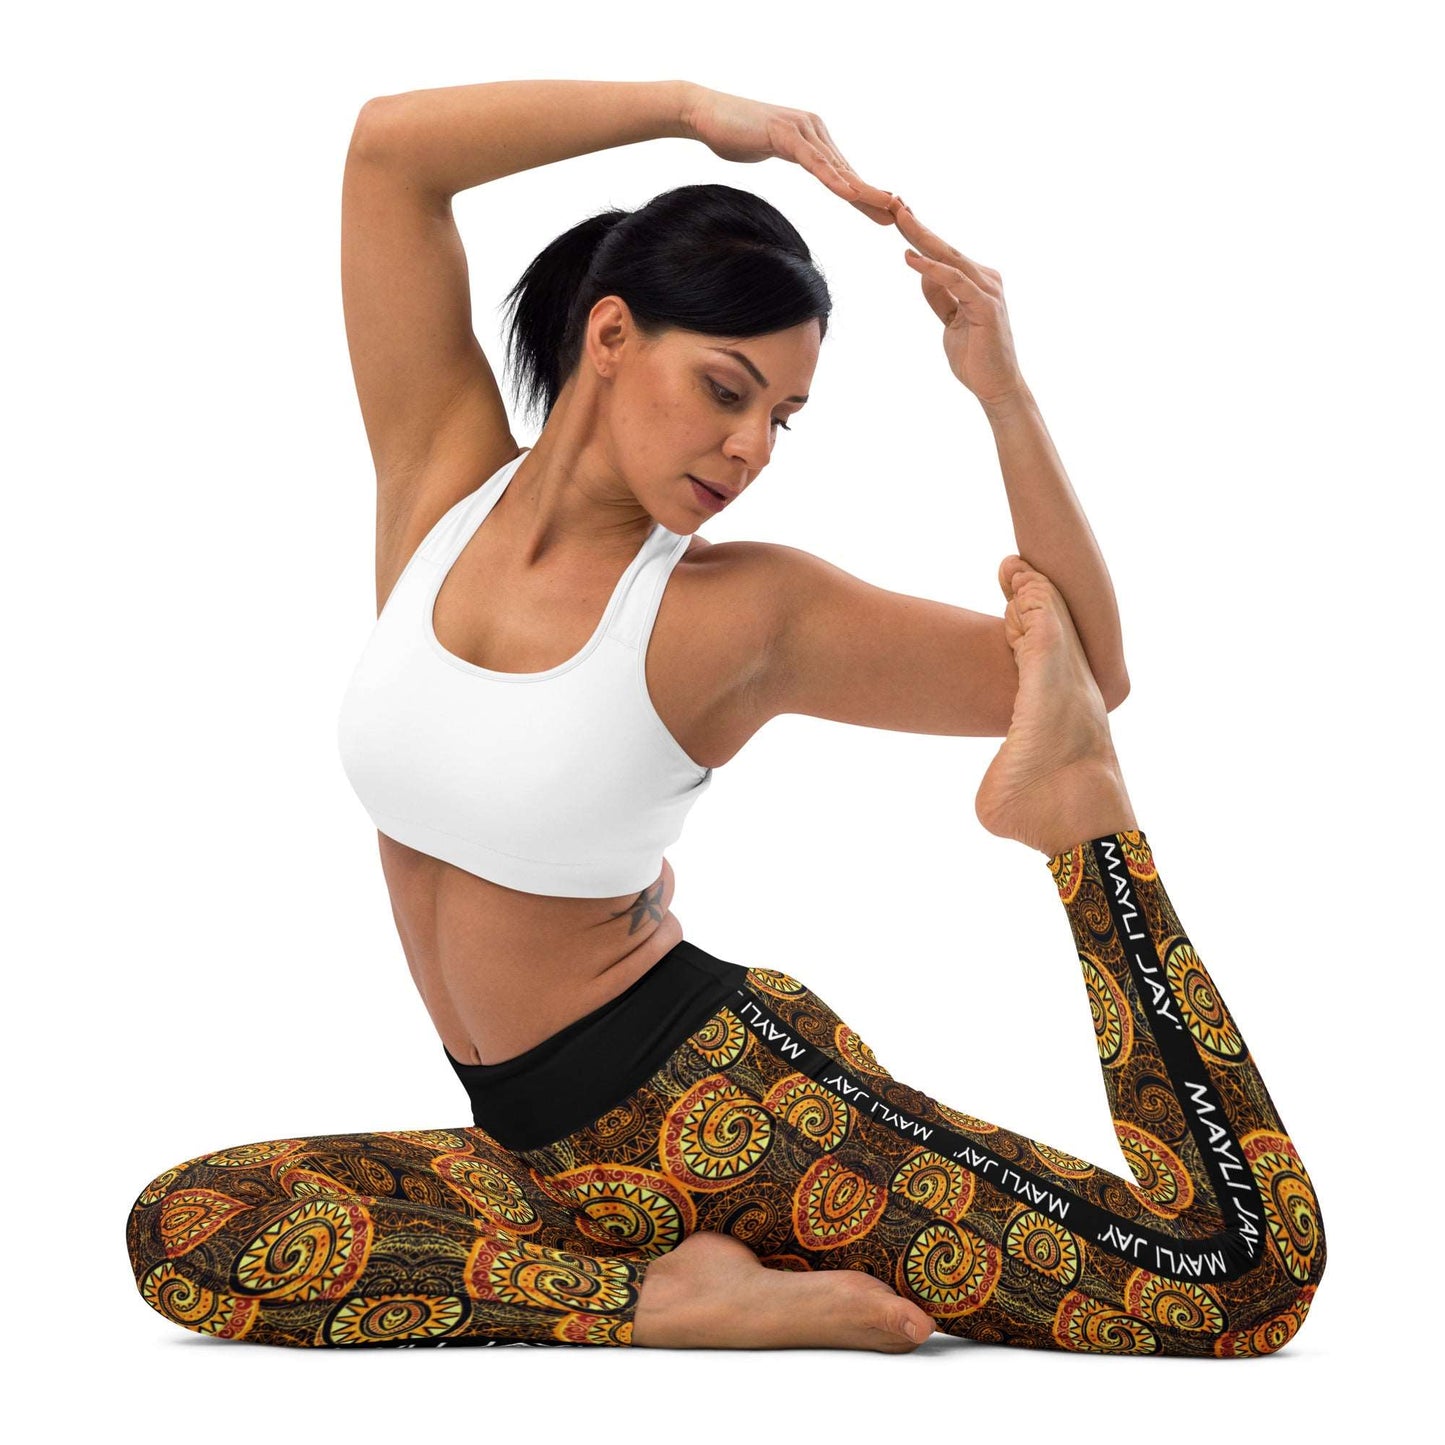 Legging de yoga imprimé wax pour femme 